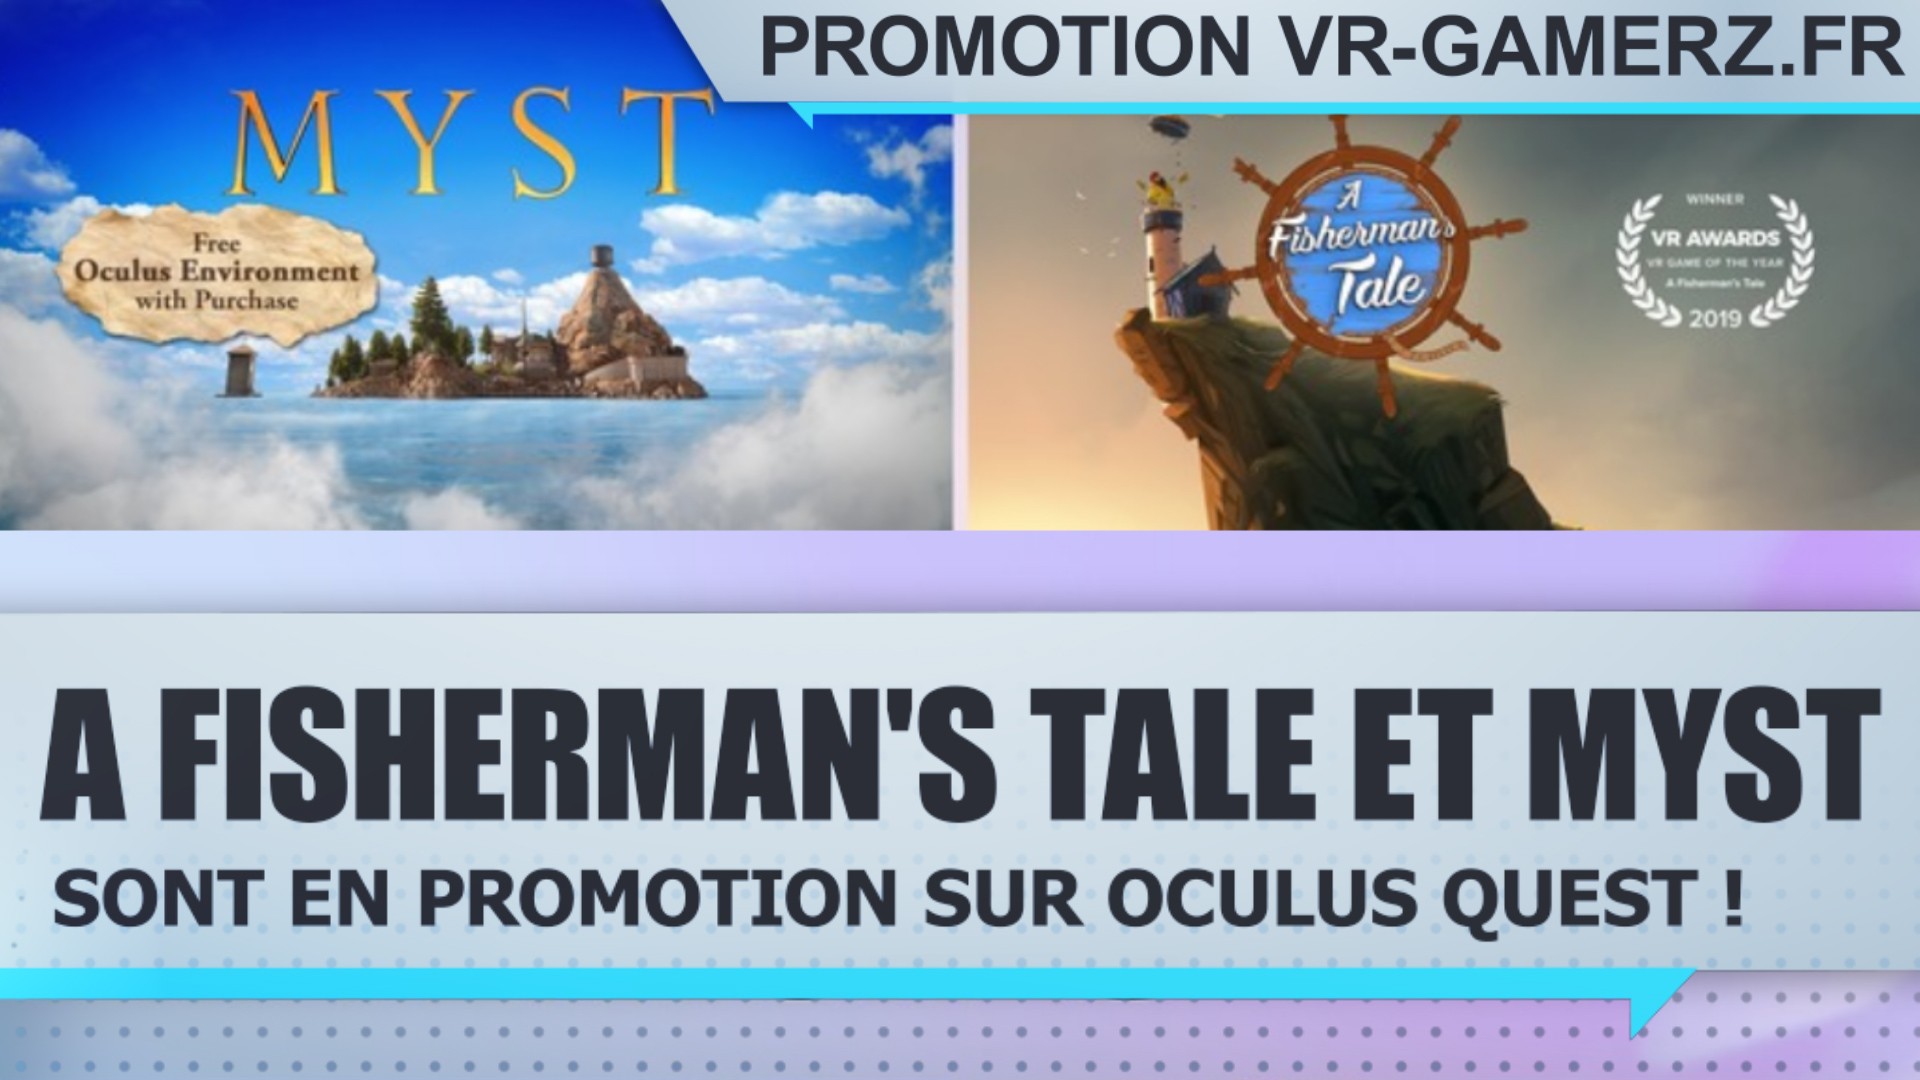 A Fisherman’s Tale et Myst sont en promotion sur Oculus quest !